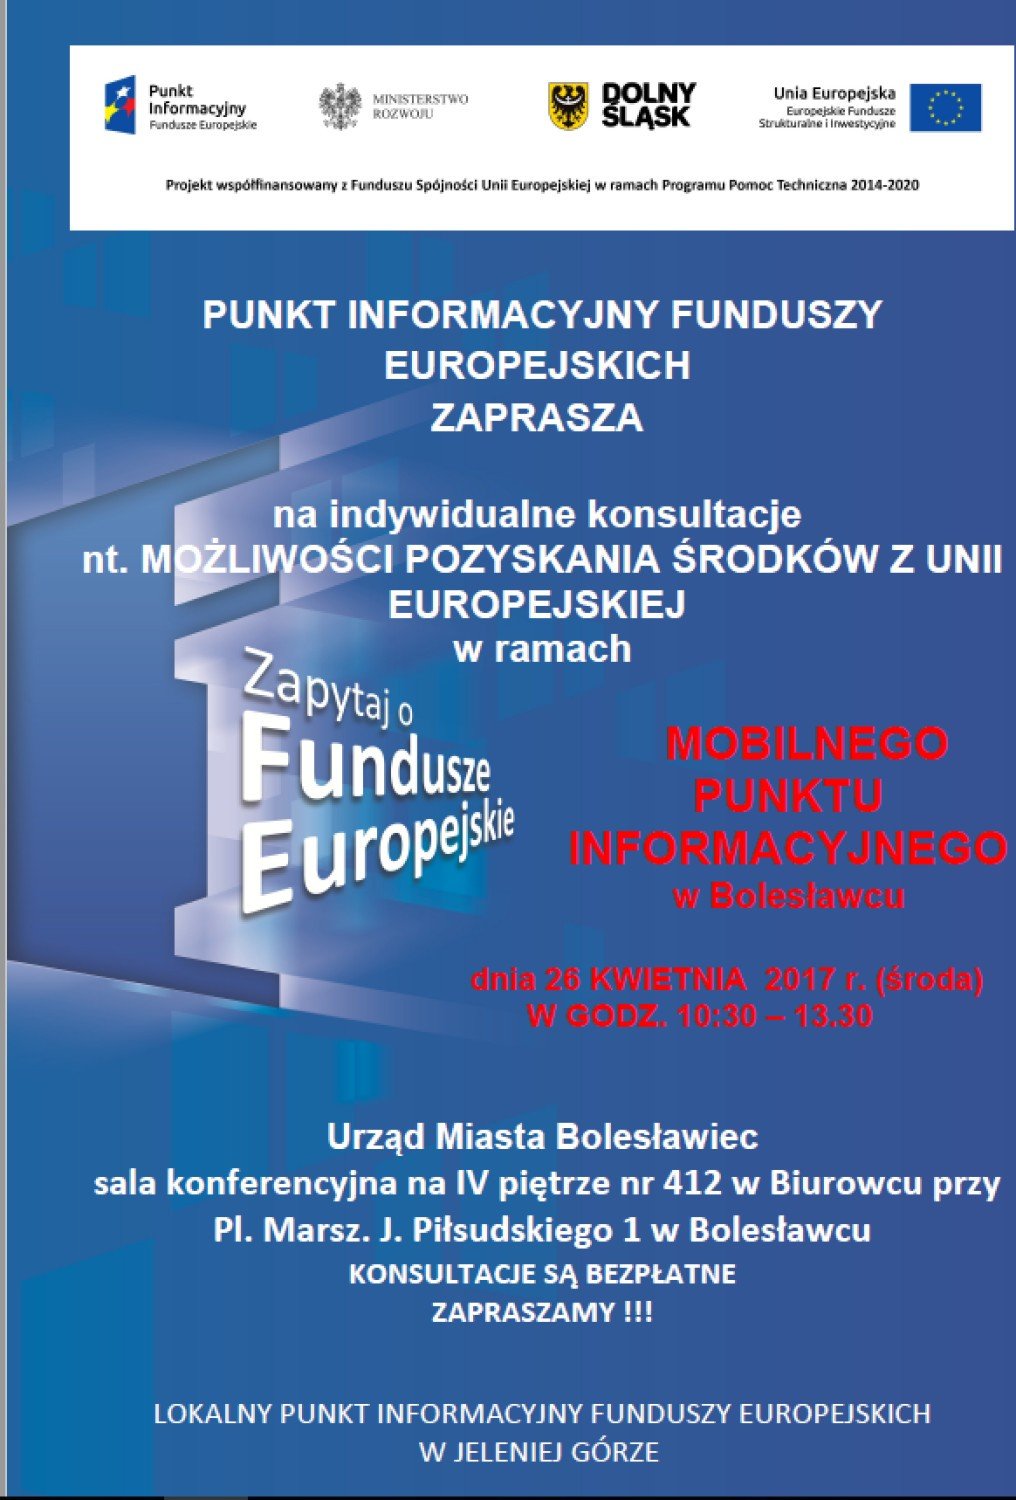 Mobilny Punkt Informacyjny Funduszy Europejskich w Bolesławcu - 26 kwietnia  2017 r. | Zgorzelec Nasze Miasto